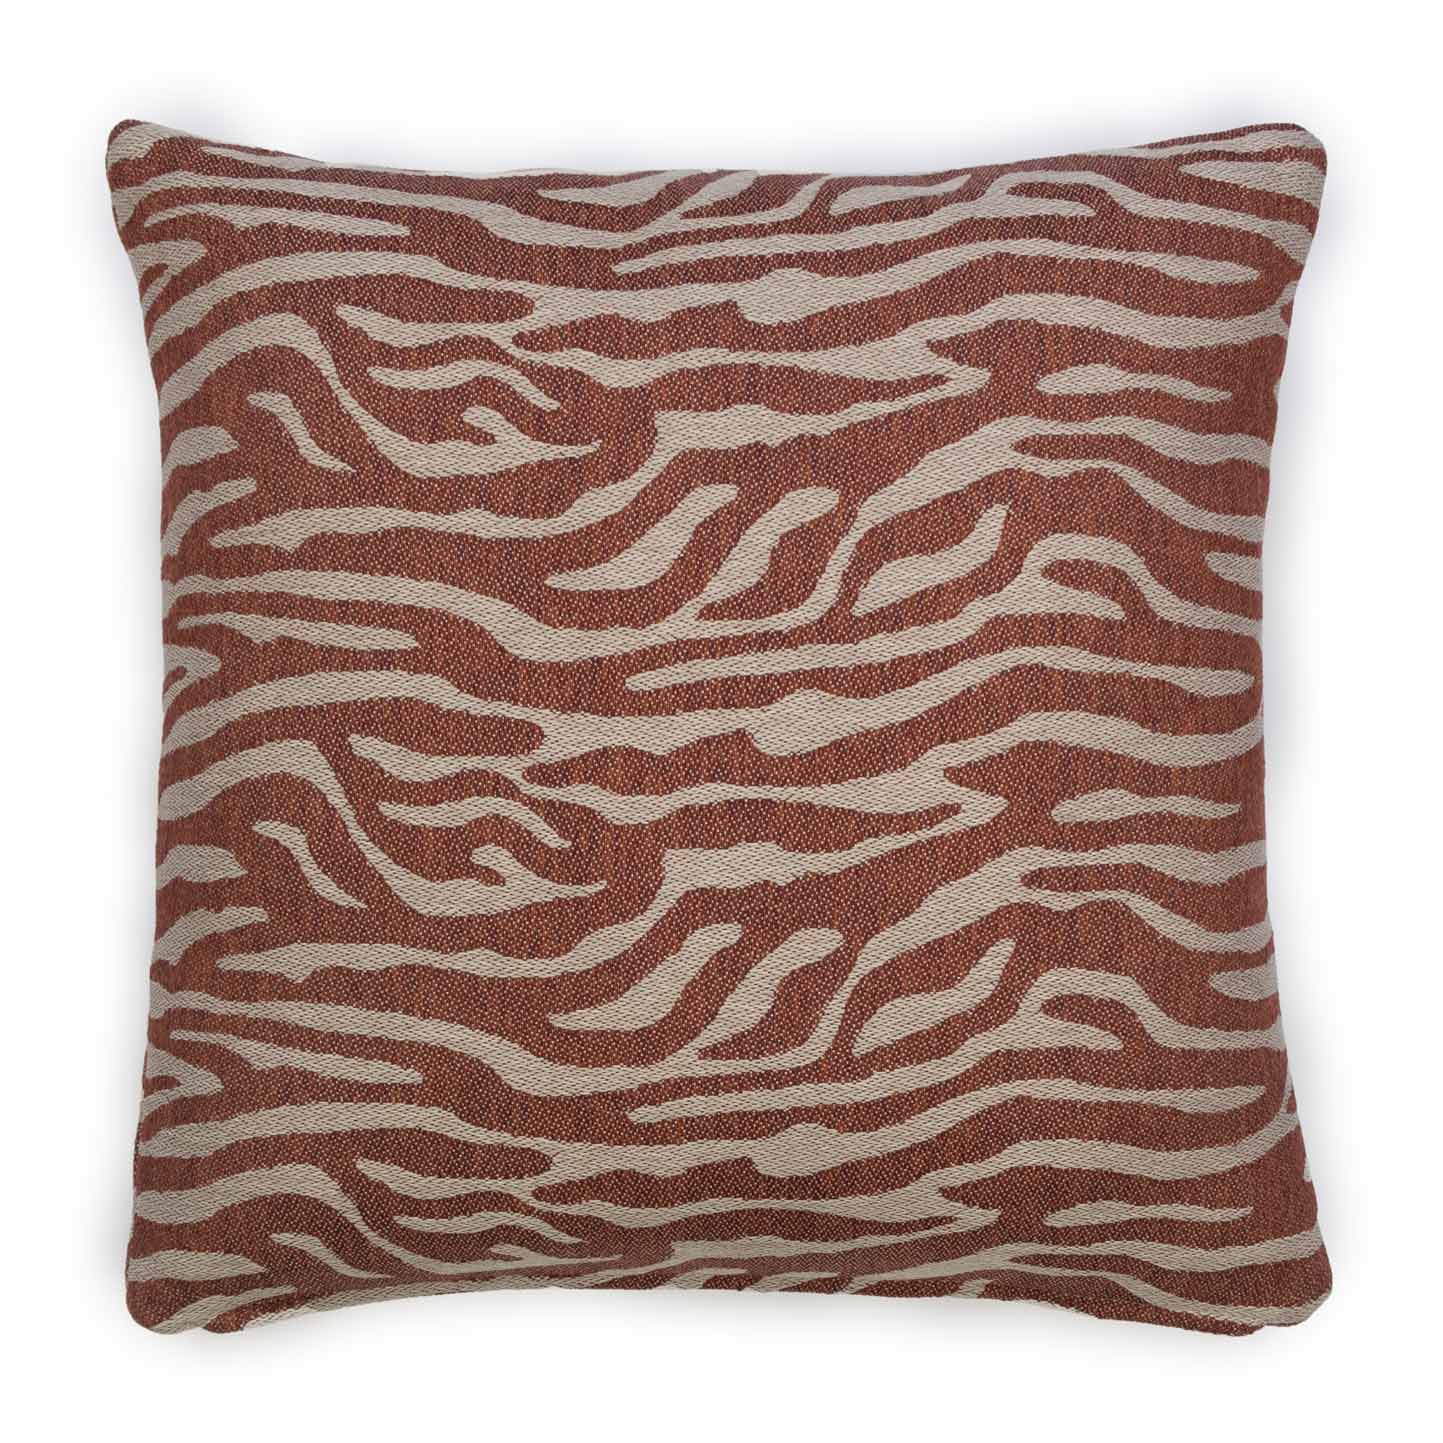 Cayenne Sun Red | Outdoor cushion - Evolution21 | By Karine Bonjean